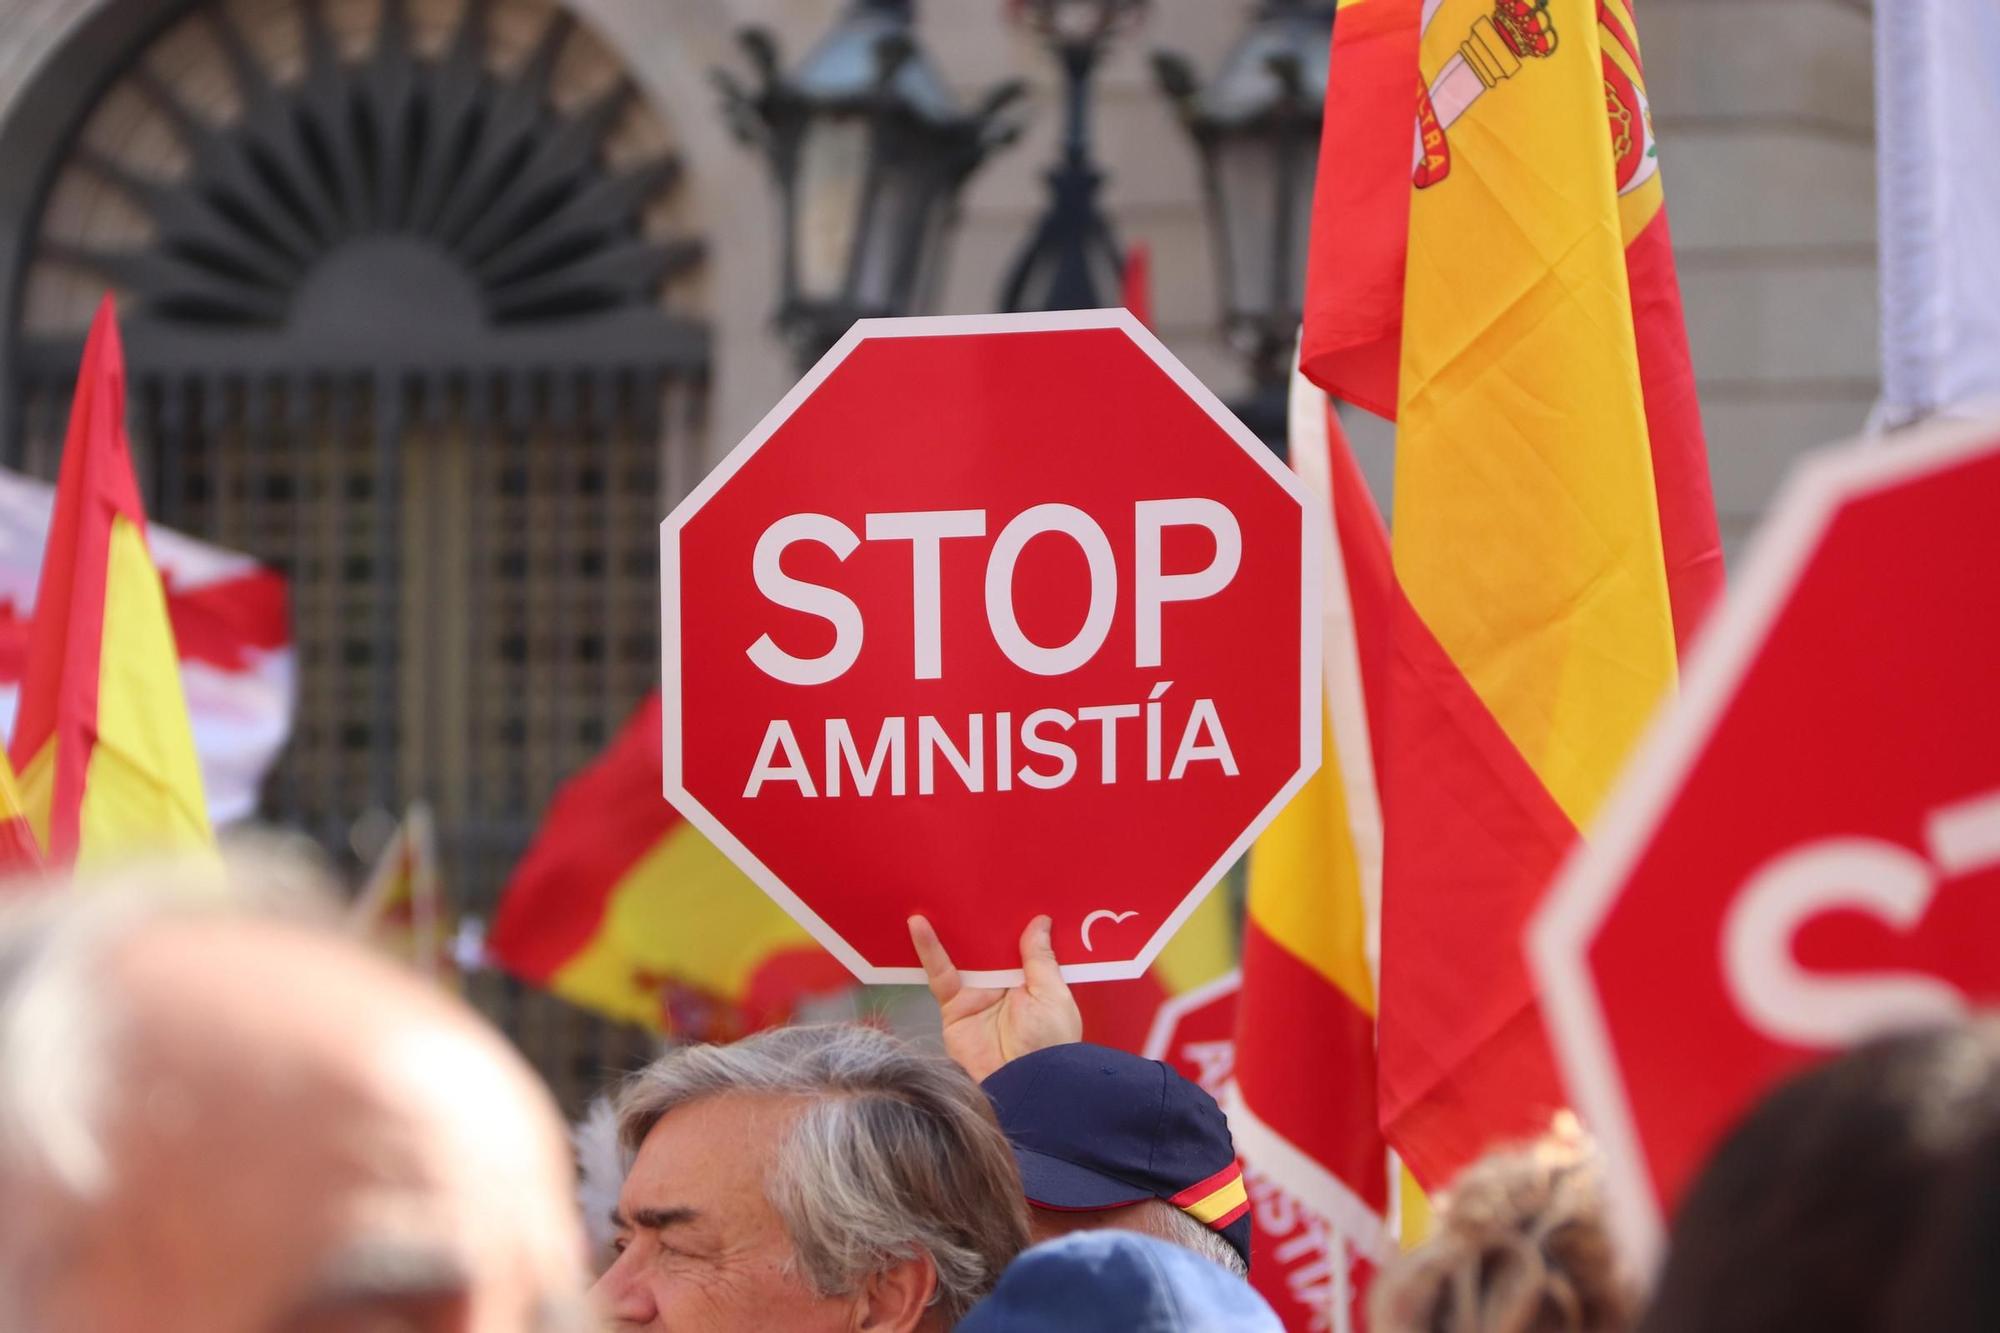 La manifestació contra l'amnistia a Barcelona, en imatges